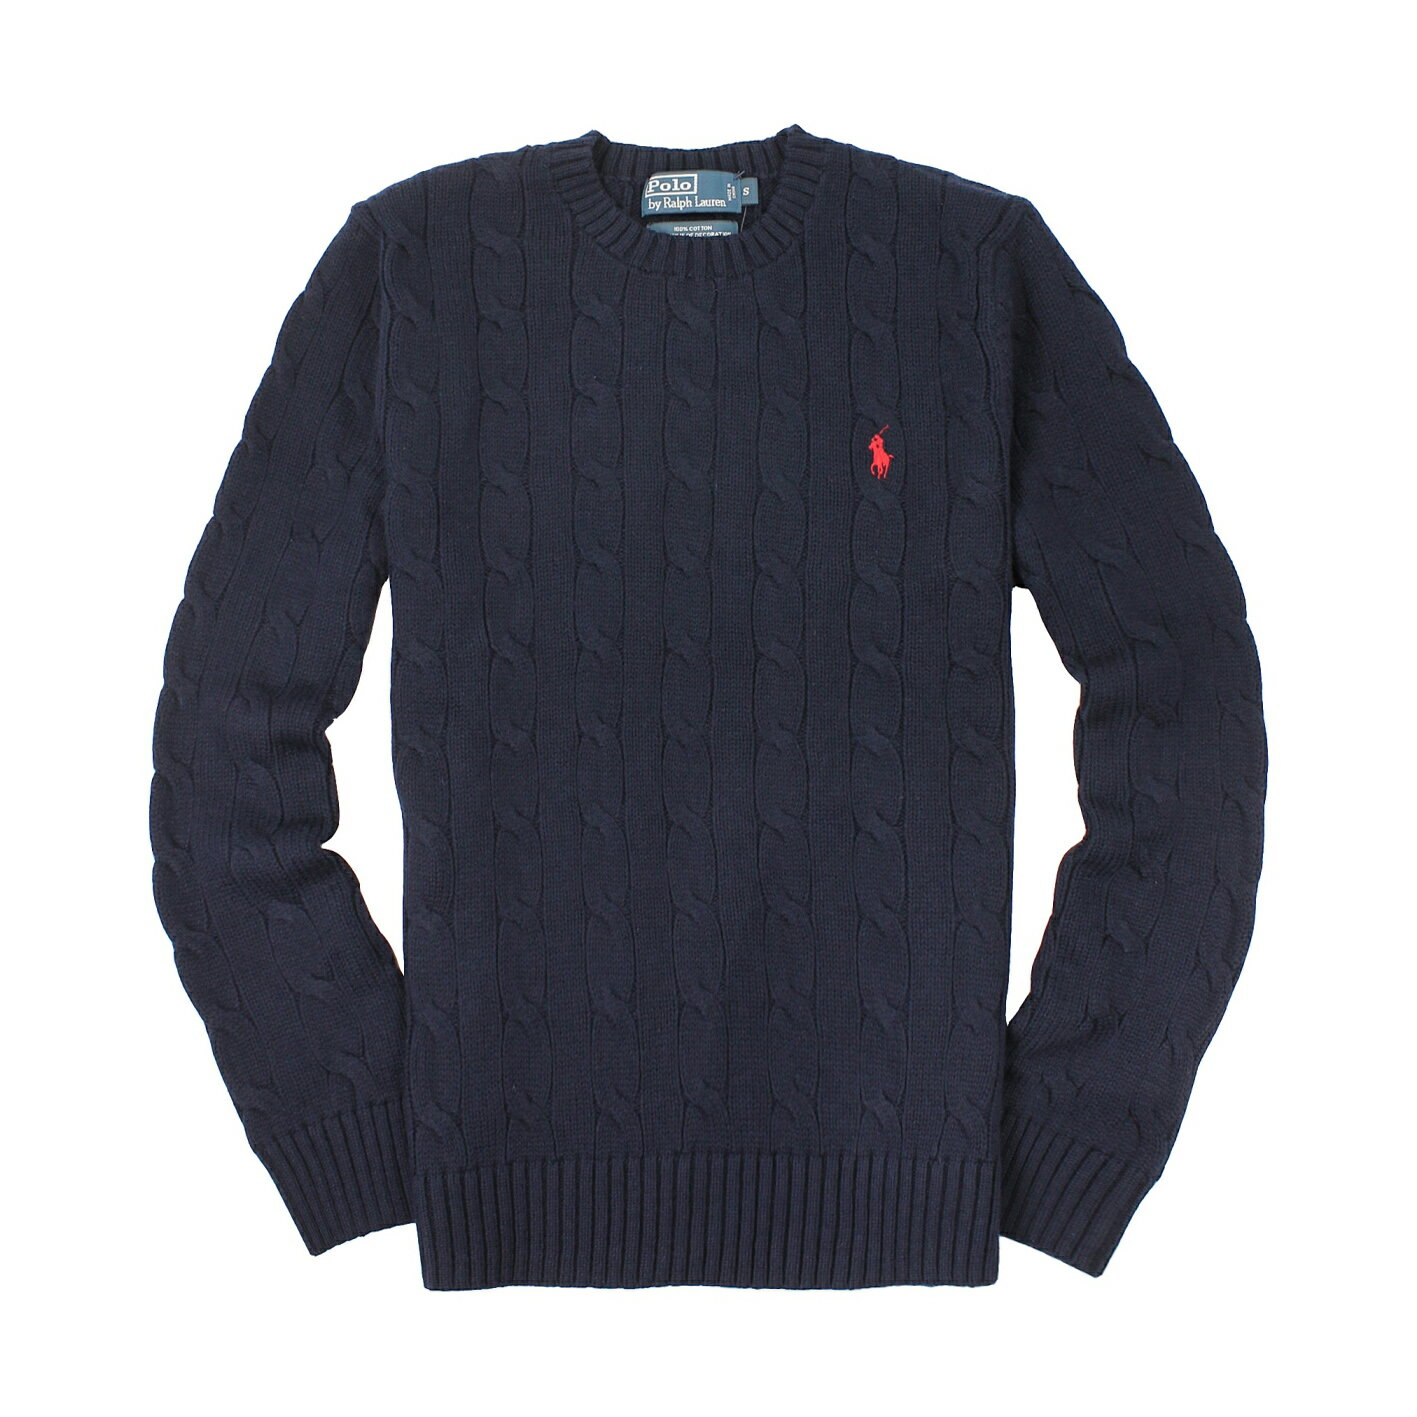 美國百分百【全新真品】Ralph Lauren 針織衫 RL polo 小馬 毛衣 線衫 深藍色 XS S號 C459